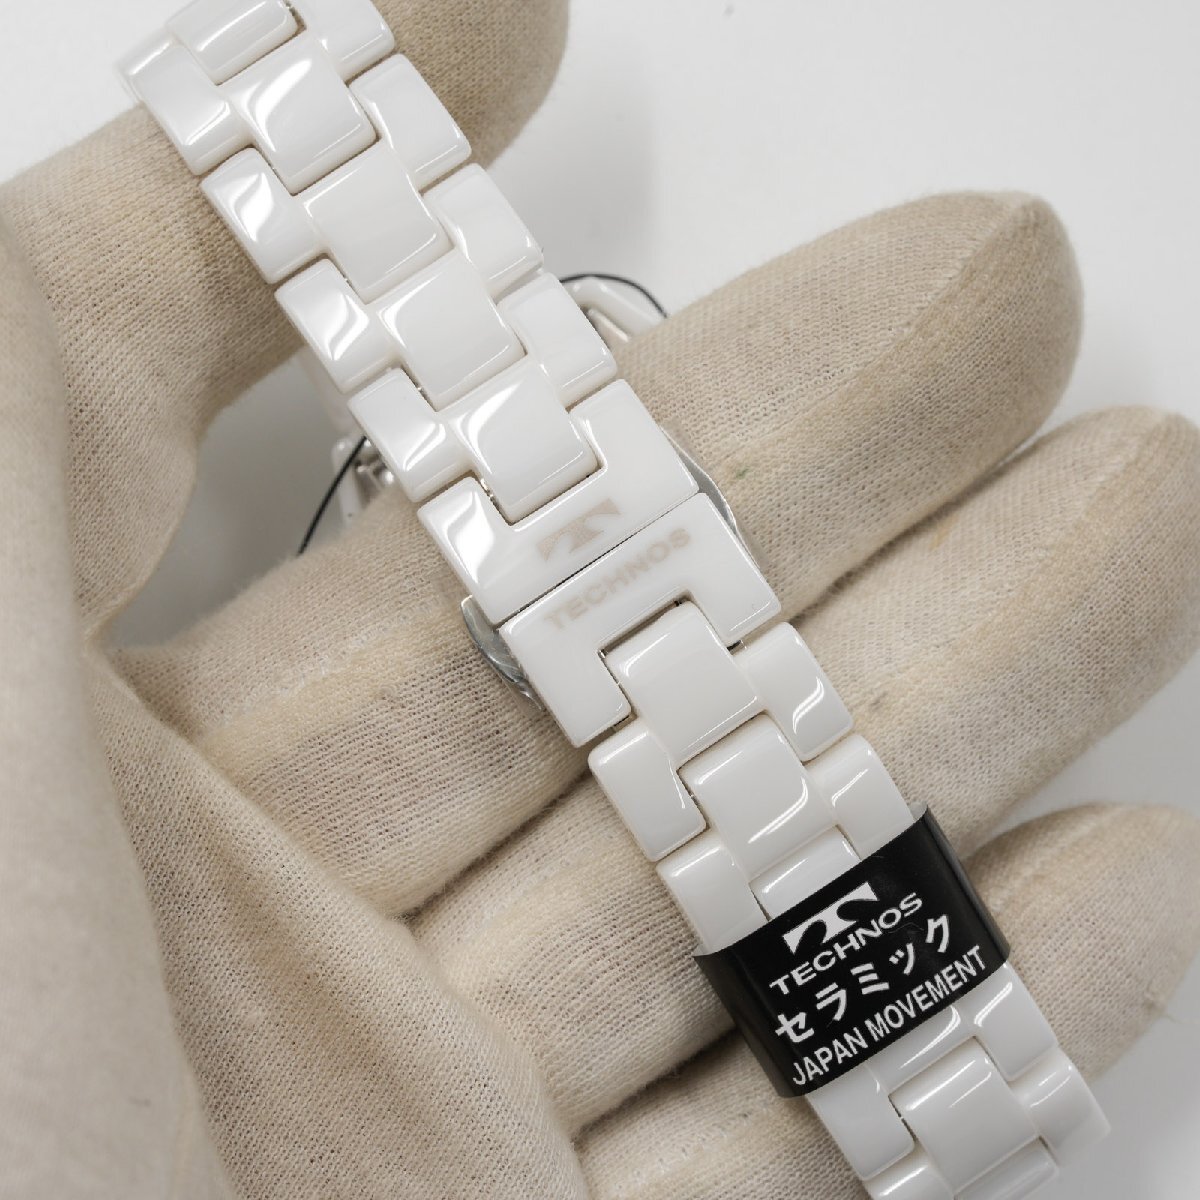  Tecnos TECHNOS наручные часы T9B82TW J12 модель белый керамика кварц мужской не использовался товар [ качество iko-]